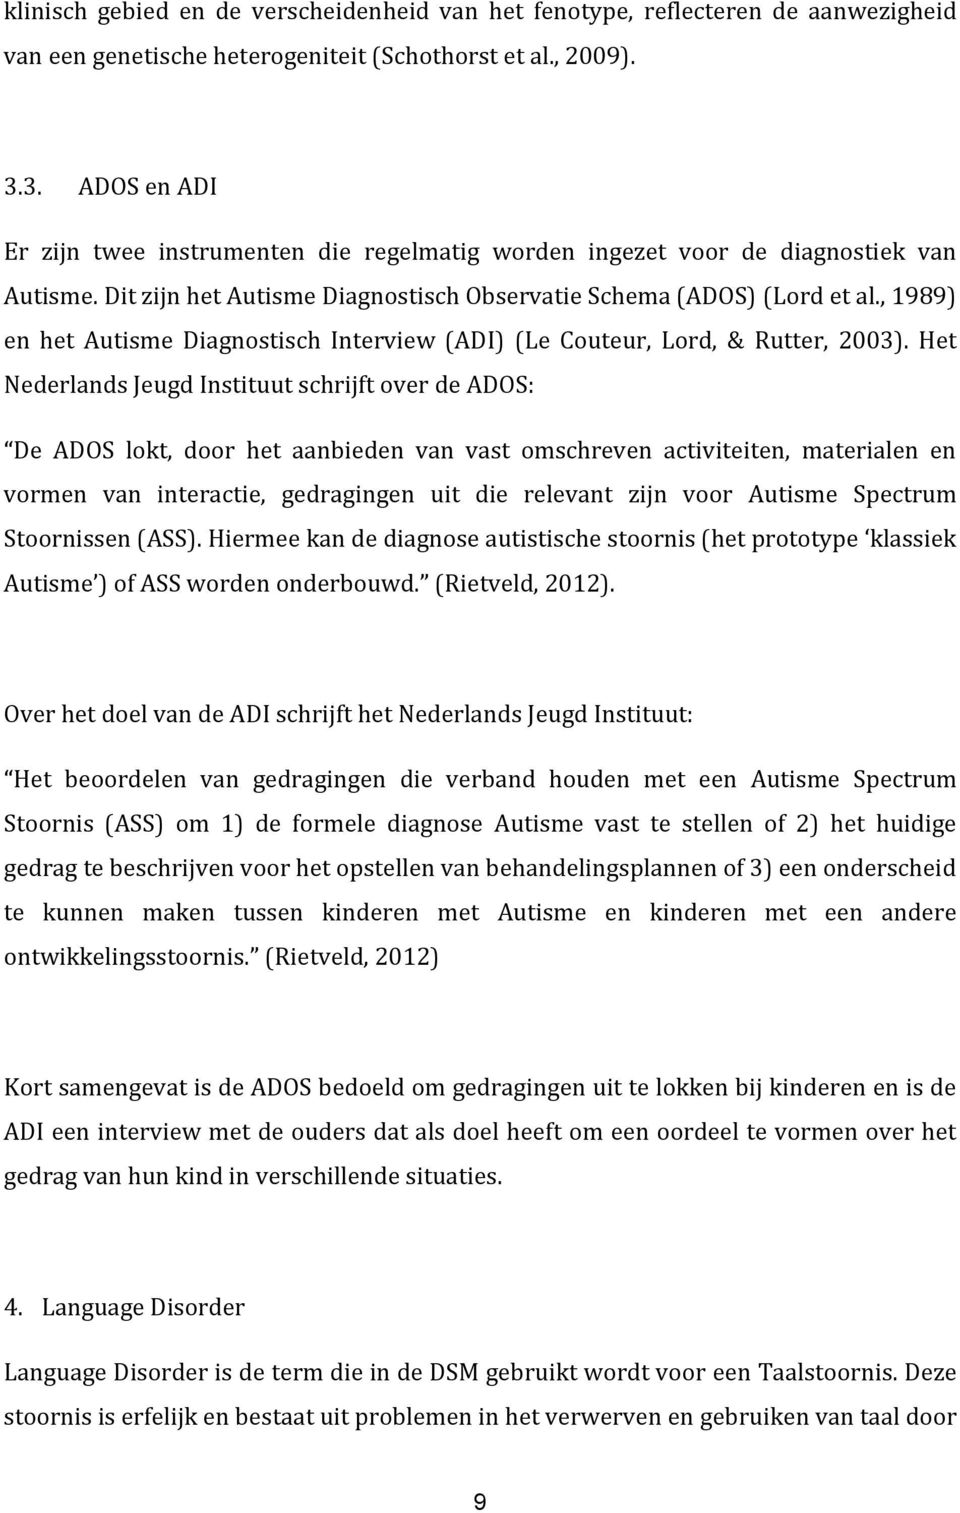 , 1989) en het Autisme Diagnostisch Interview (ADI) (Le Couteur, Lord, & Rutter, 2003).